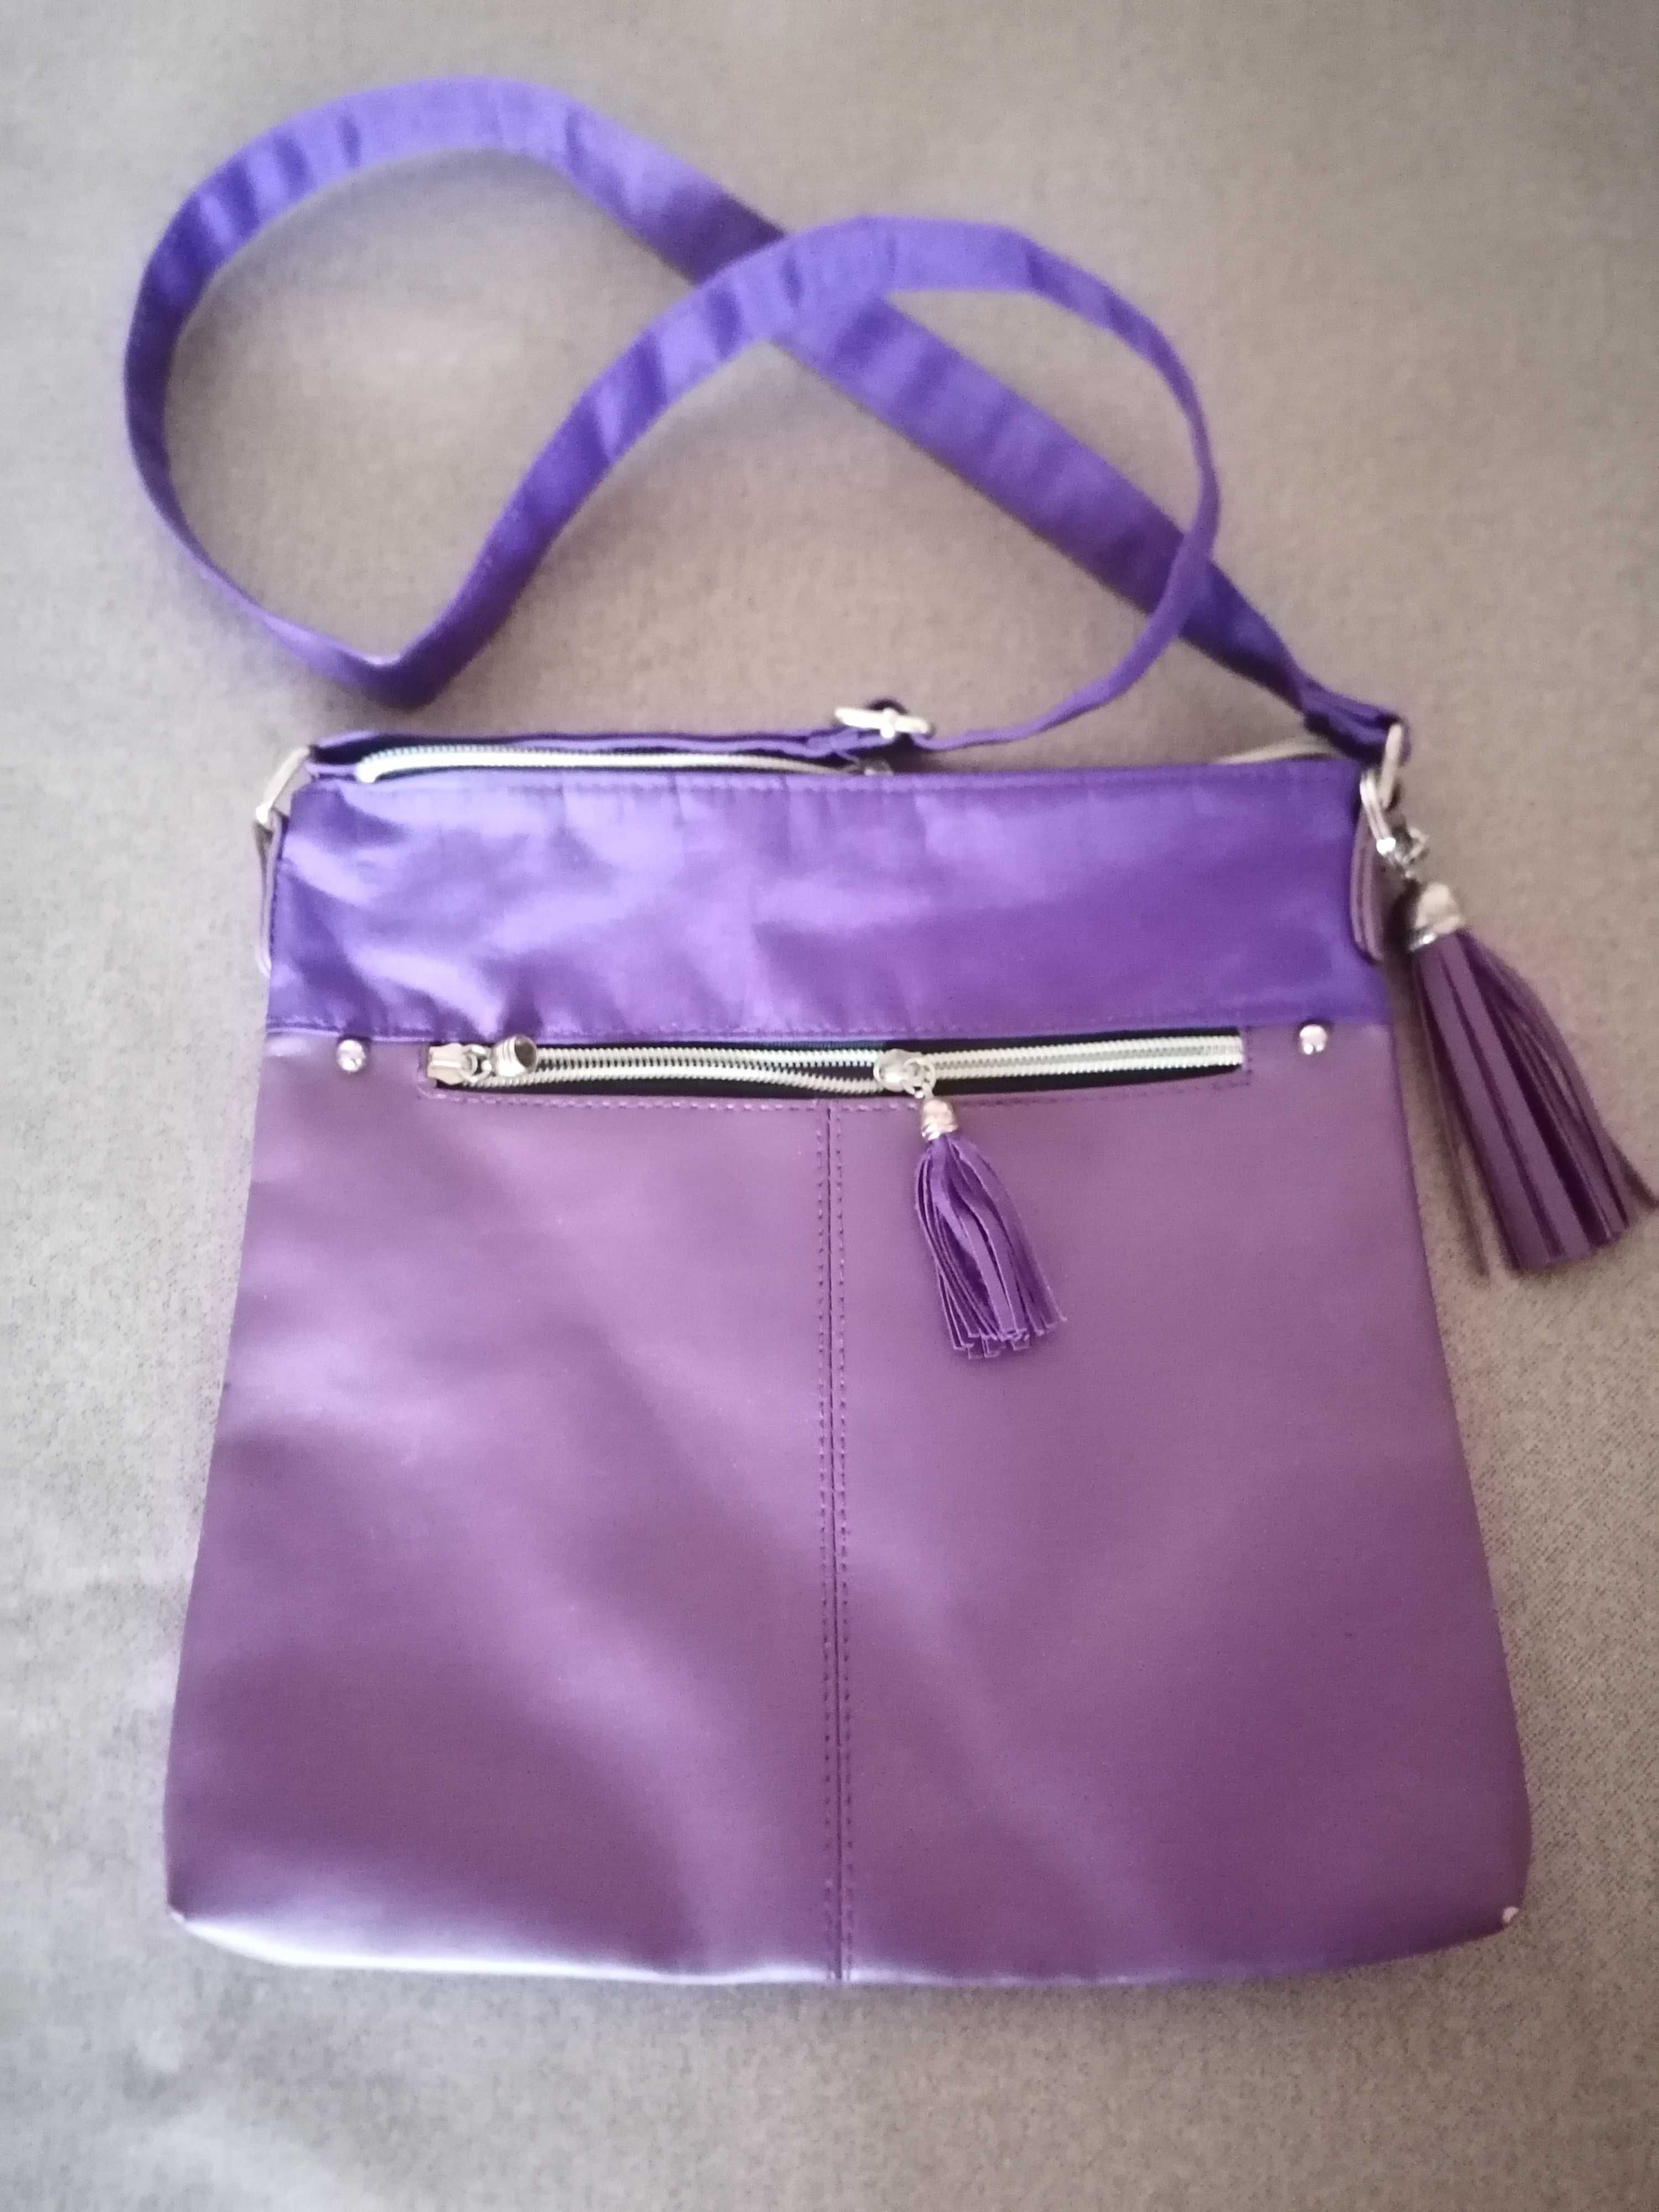 Torba,torebka z paskiem na ramię fioletowa.